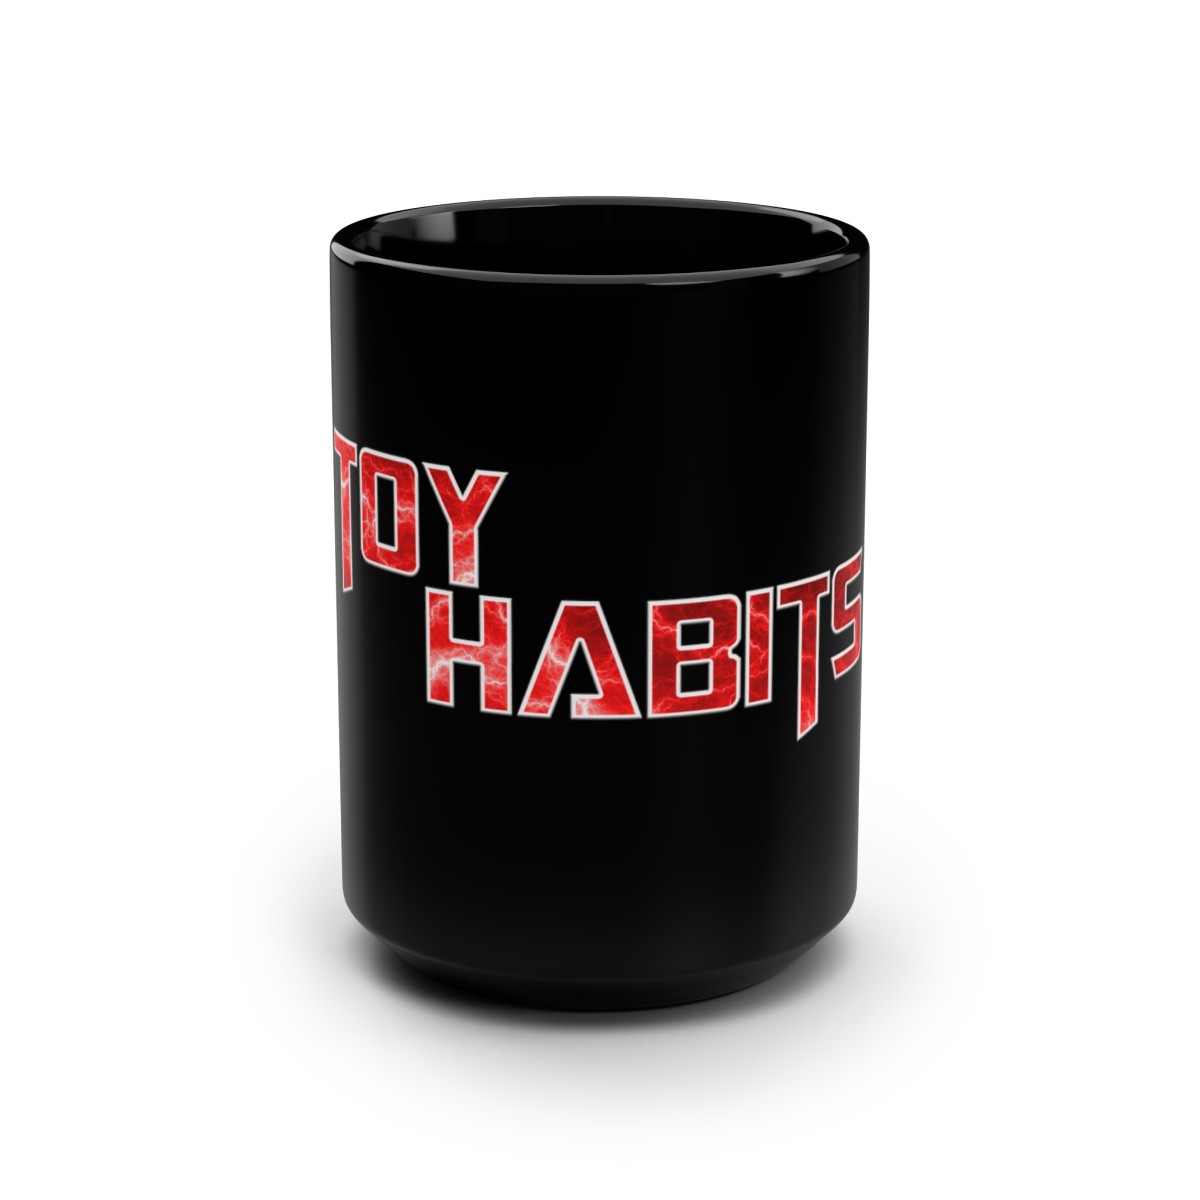 Toy Habits Mug, 15oz product main image